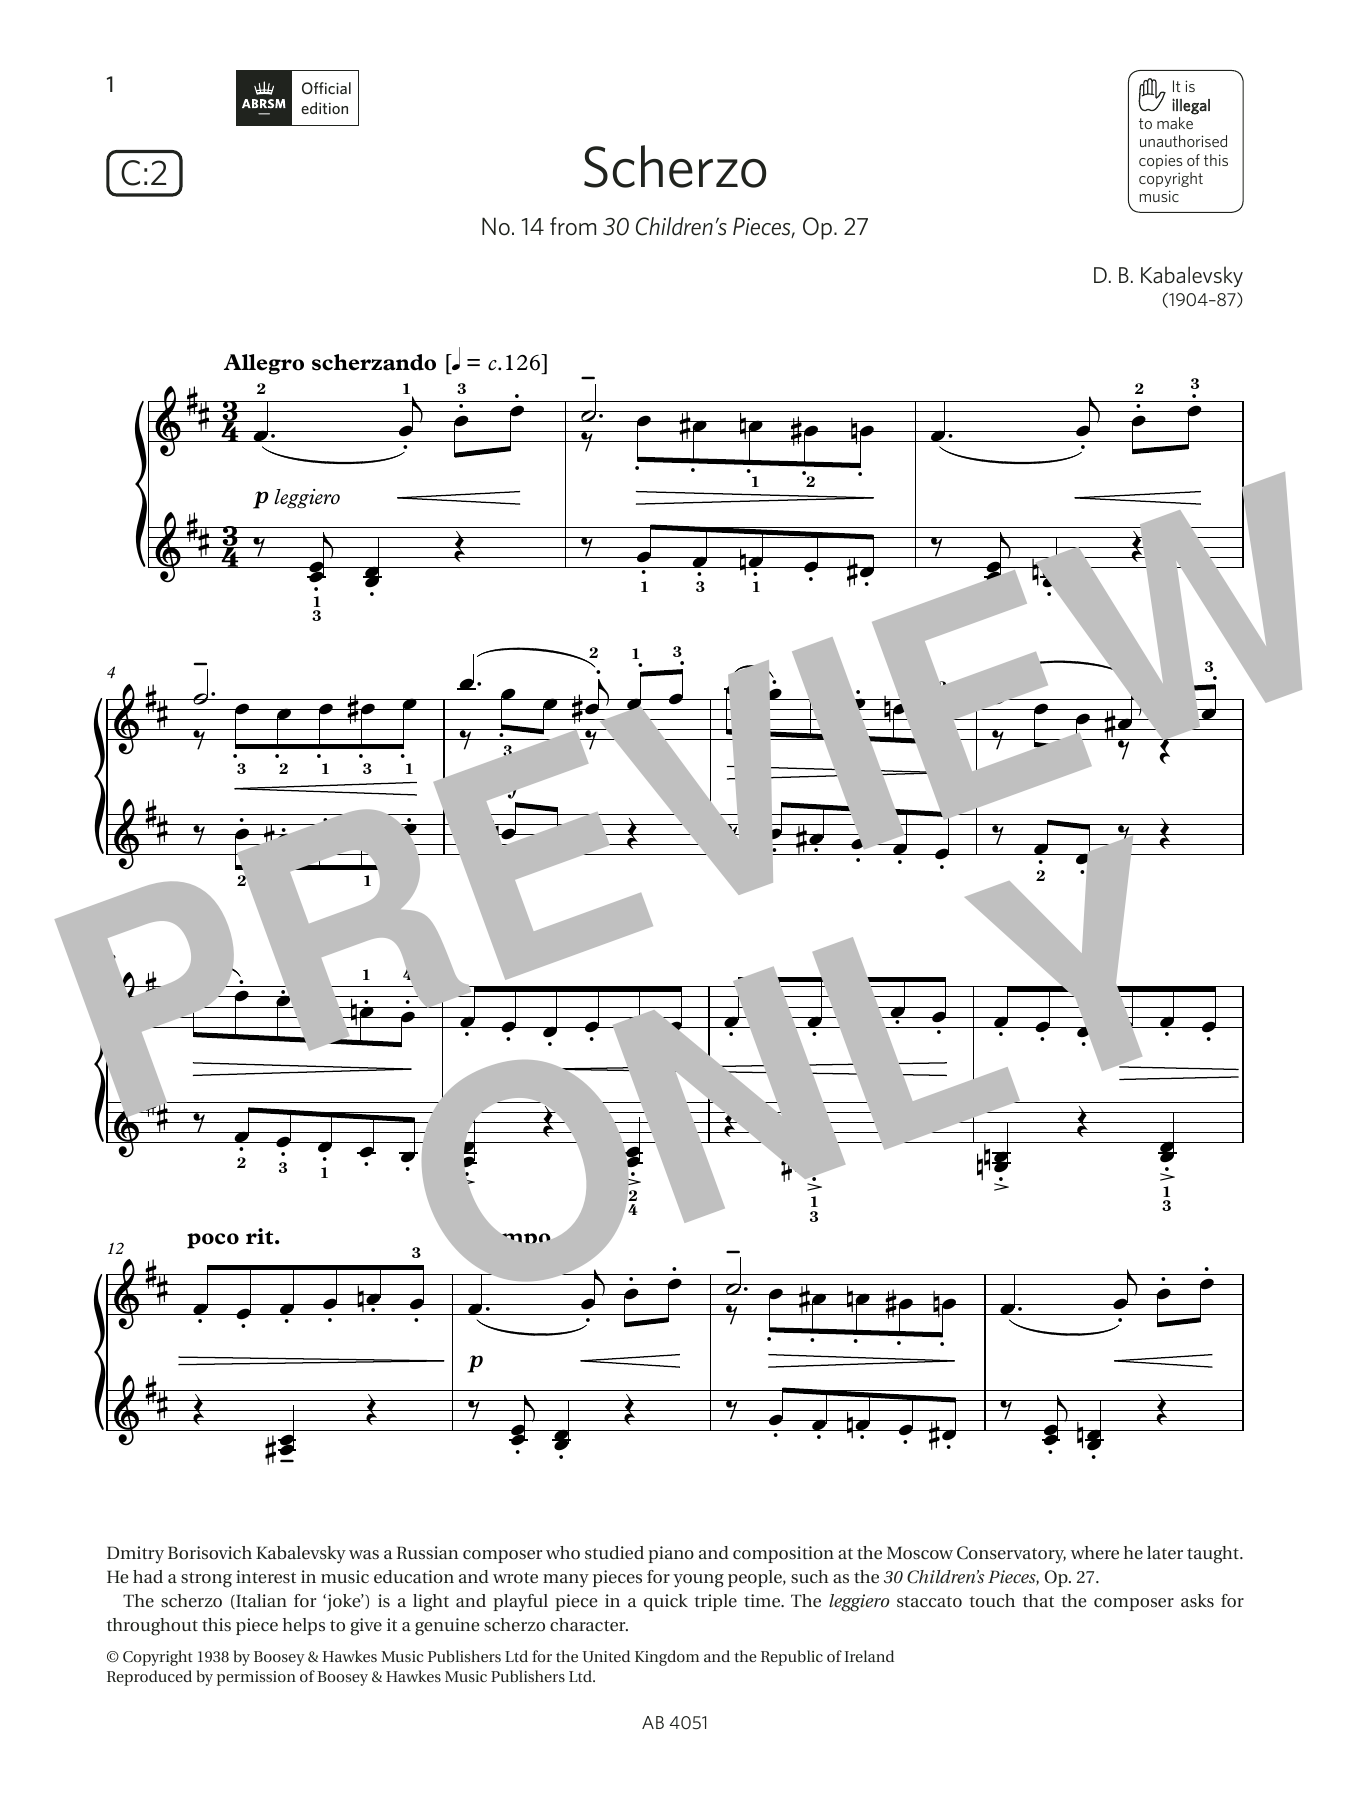 Download D B Kabalevsky Scherzo (Grade 5, list C2, from the ABR Sheet Music